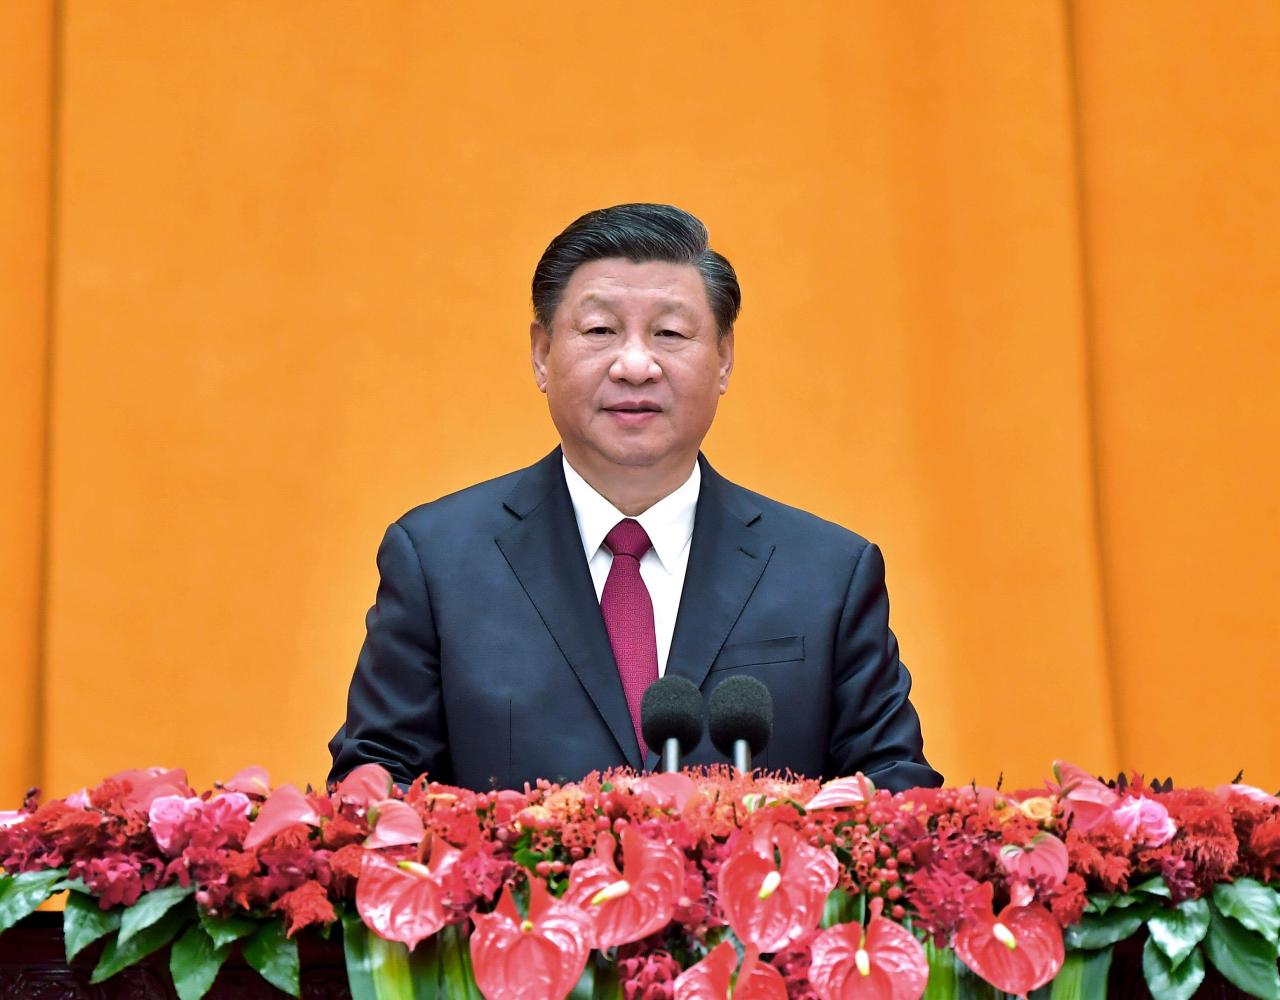 Xi Jinping intensifica su retórica antitaiwanesa y antiestadounidense